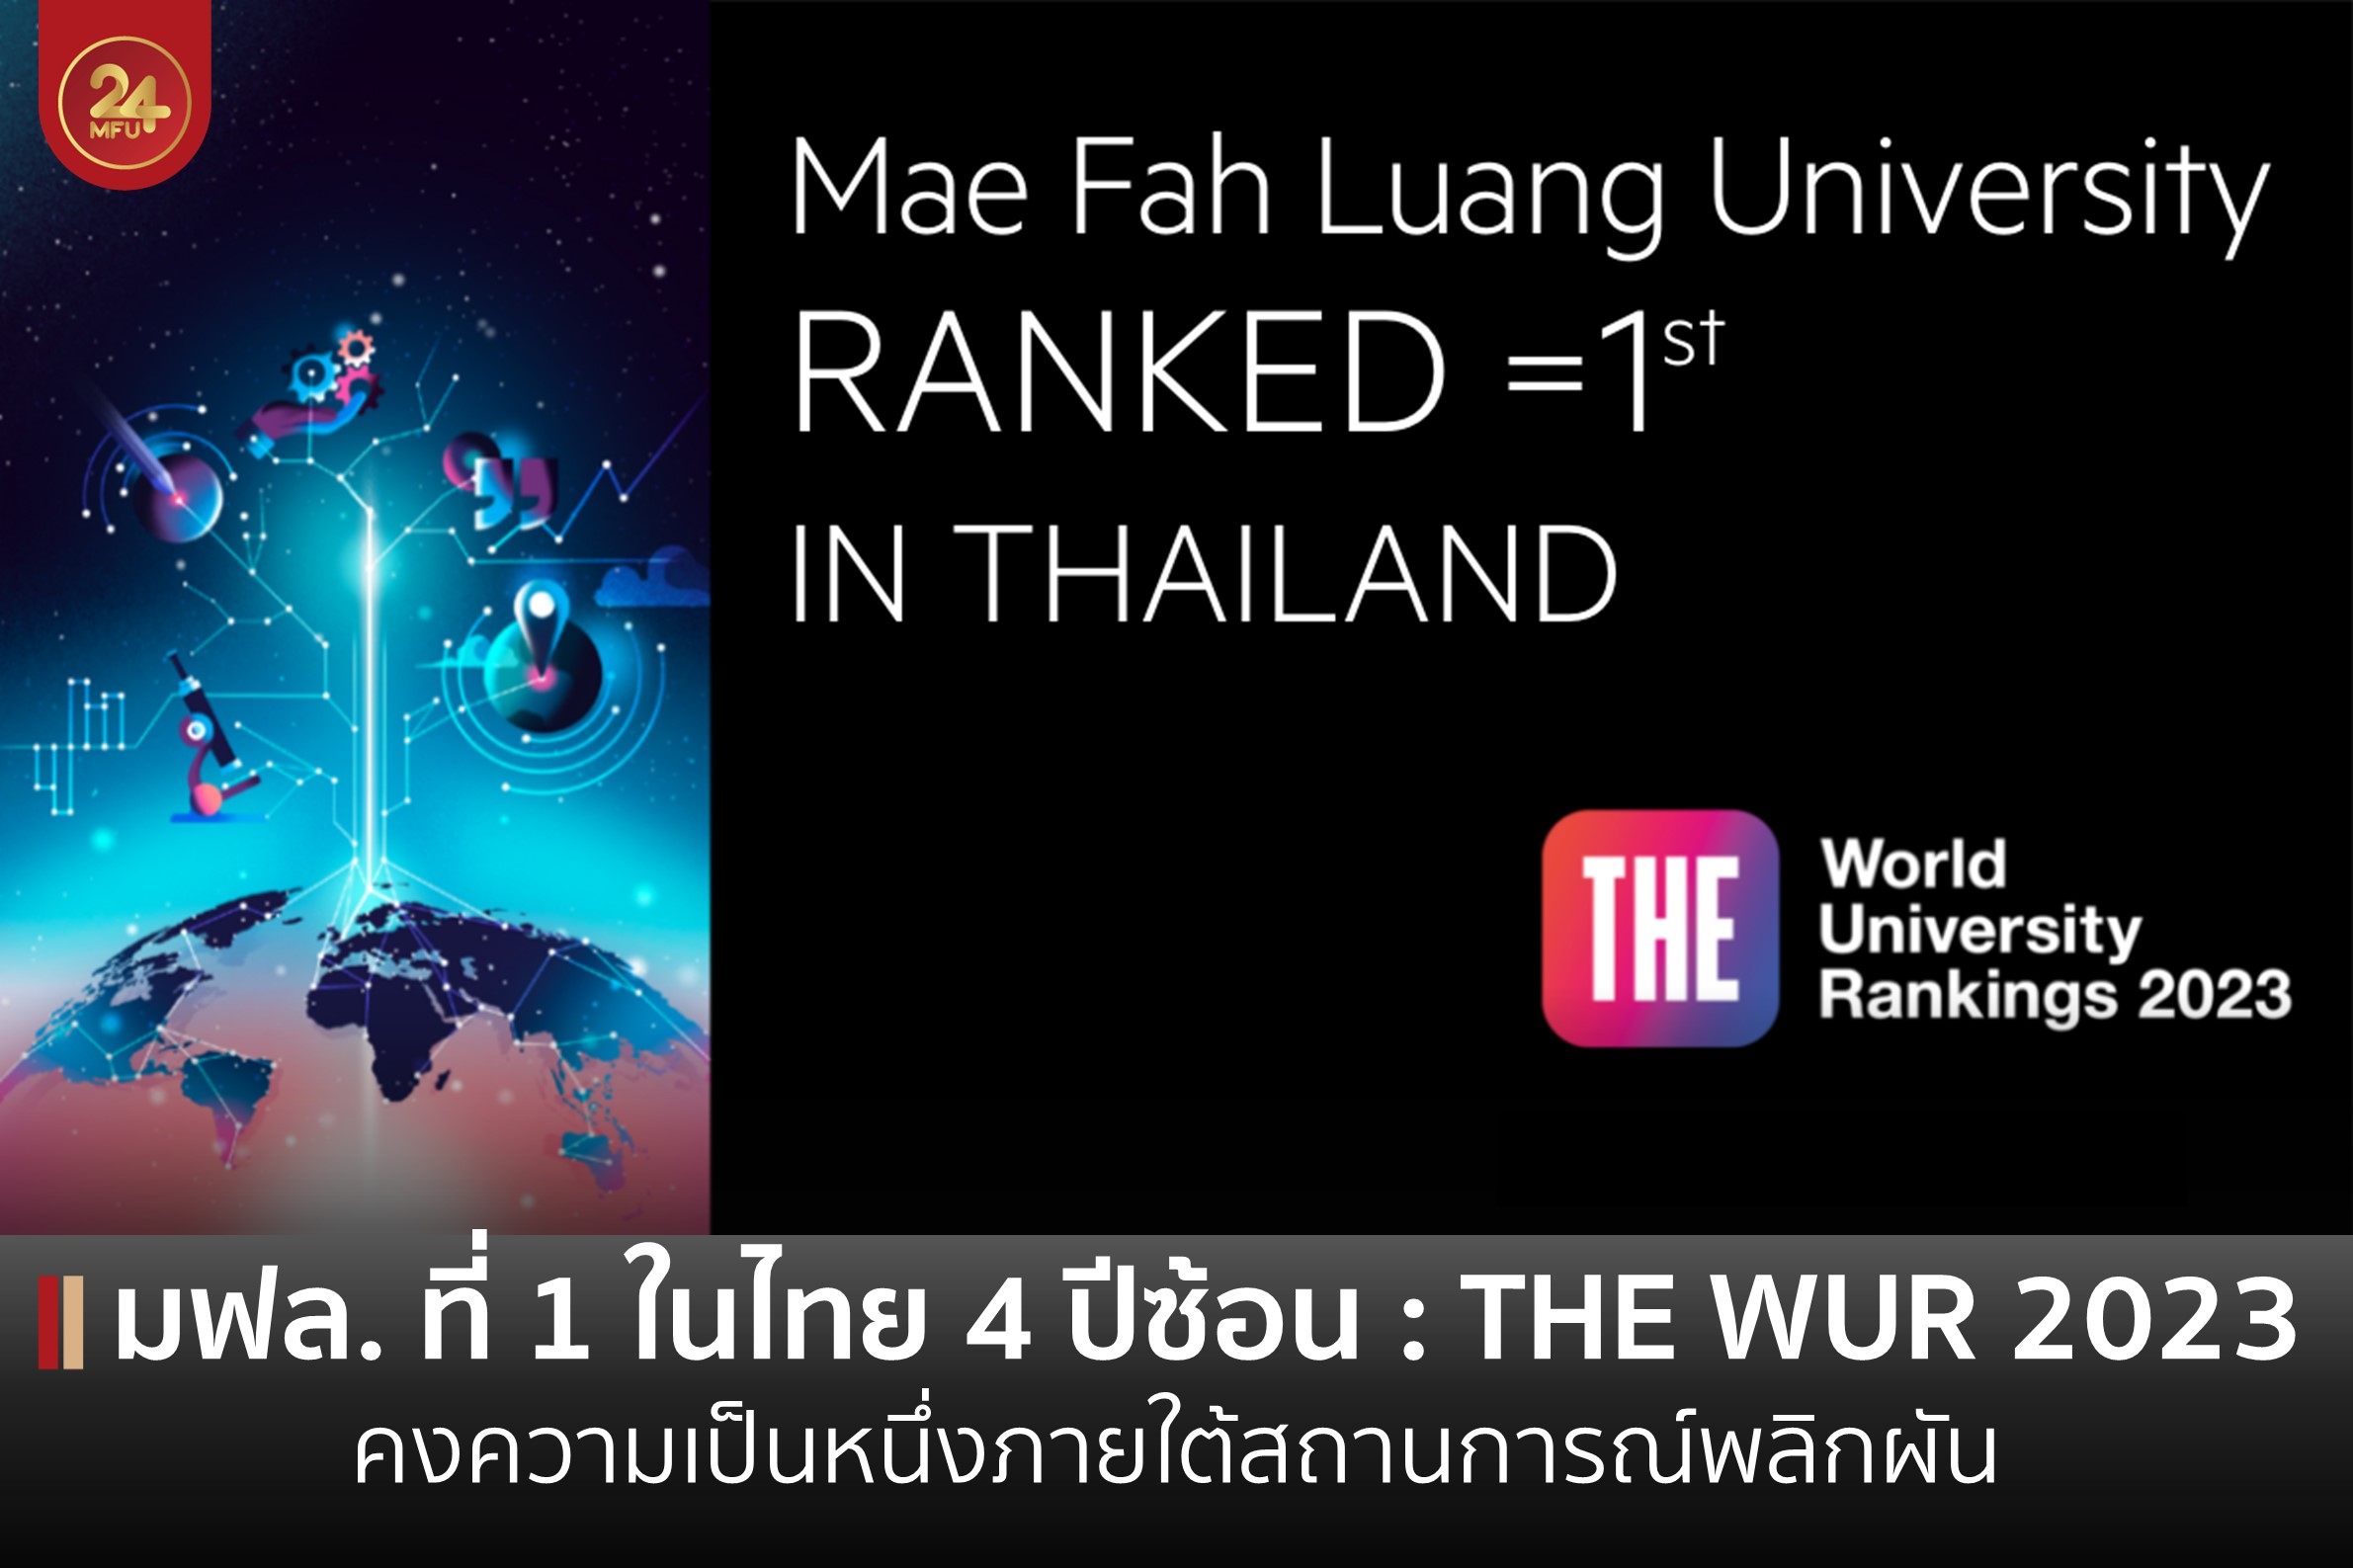 ผลการจัดอันดับ THE World University 2023 มฟล. ที่ 1 ในไทย : คงความเป็นหนึ่งภายใต้สถานการณ์พลิกผัน 